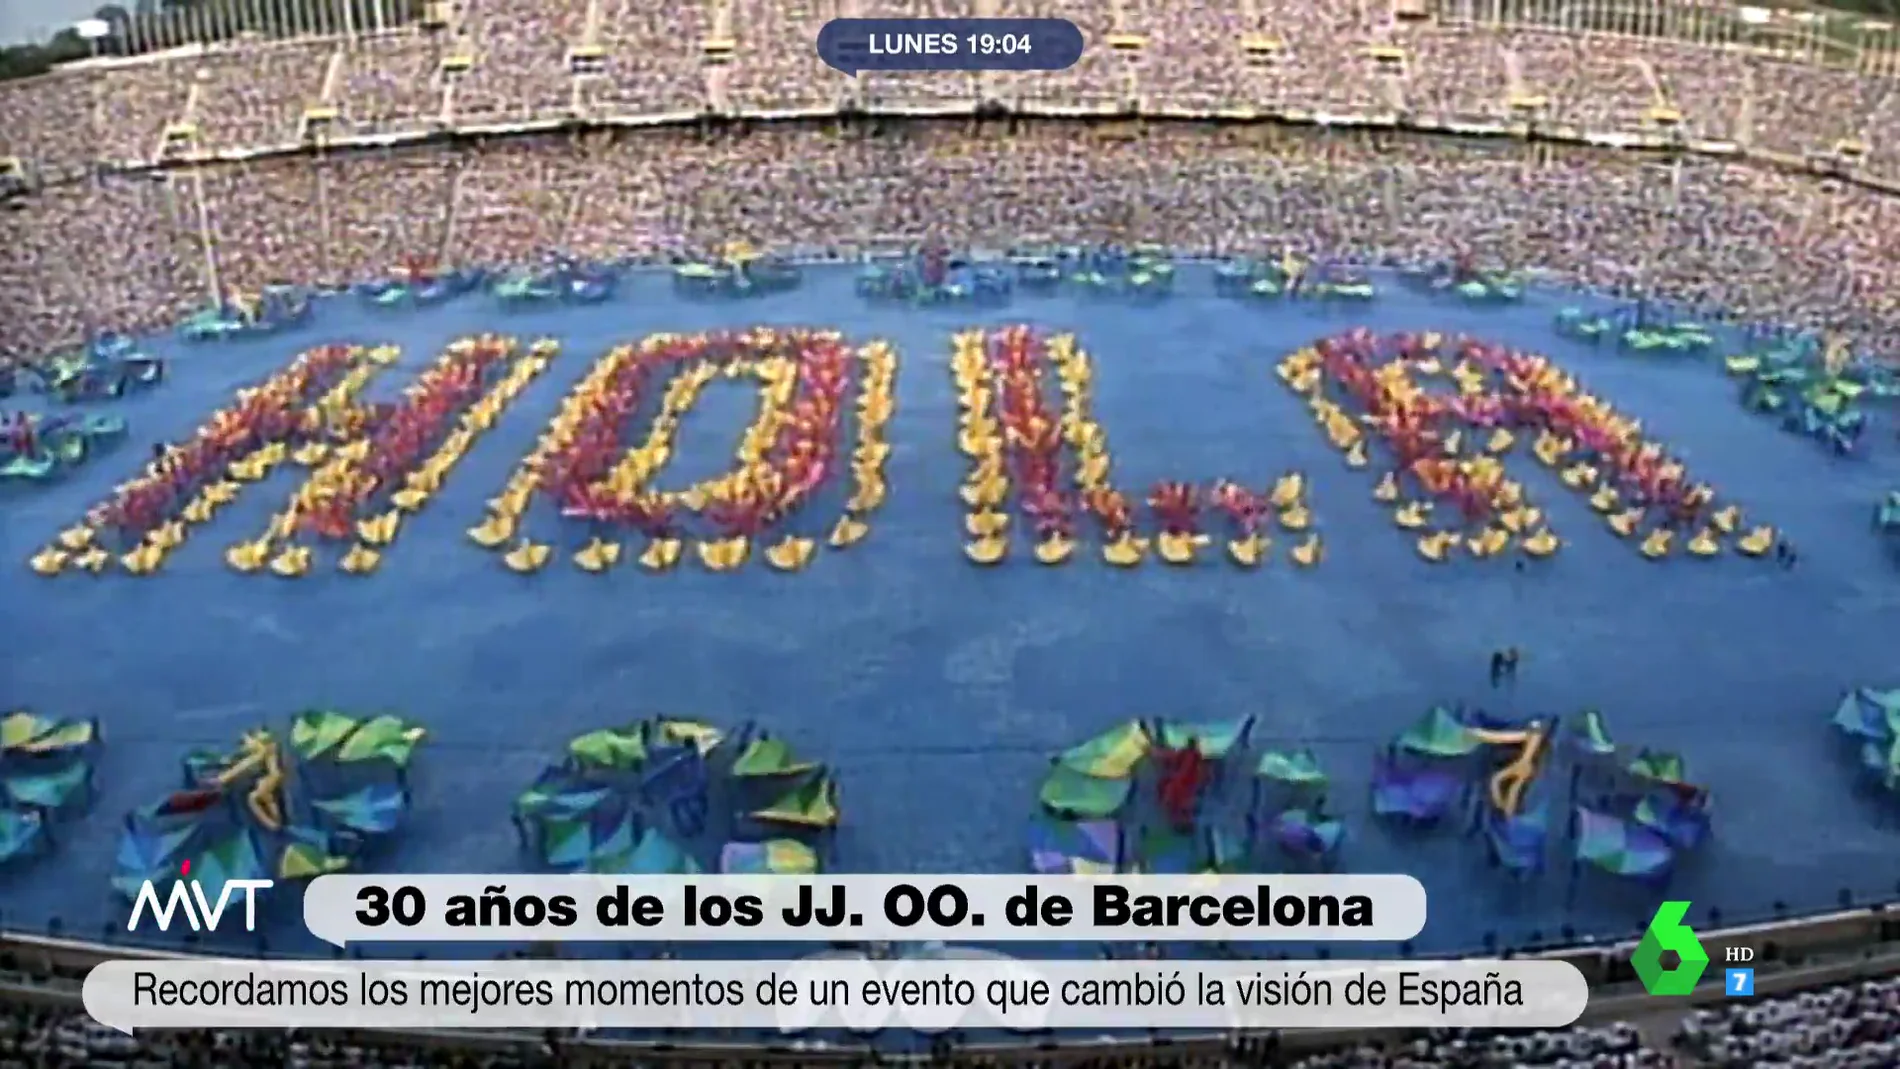 30 años de Barcelona 92: los mejores momentos de los Juegos Olímpicos que cambiaron la visión de España